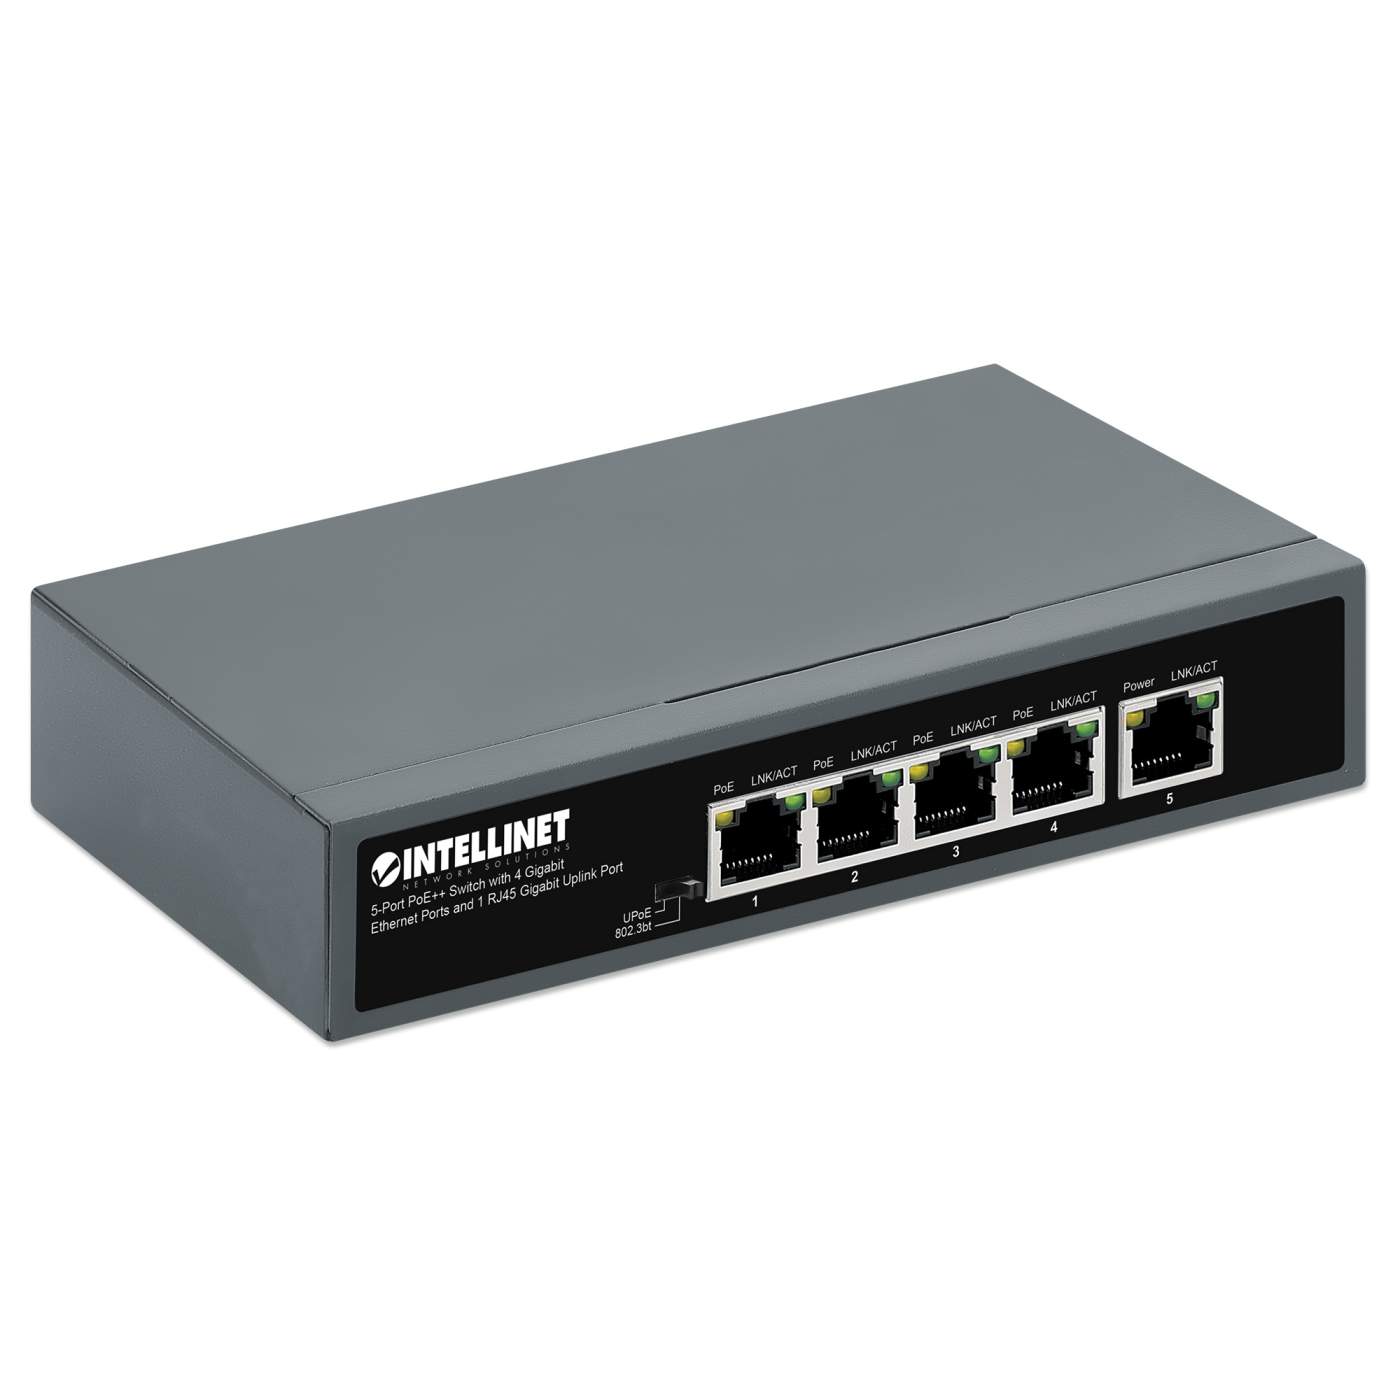 5-Port PoE++ Switch with 4 Gigabit Ethernet Ports and 1 RJ45 Gigabit Uplink Port Image 2